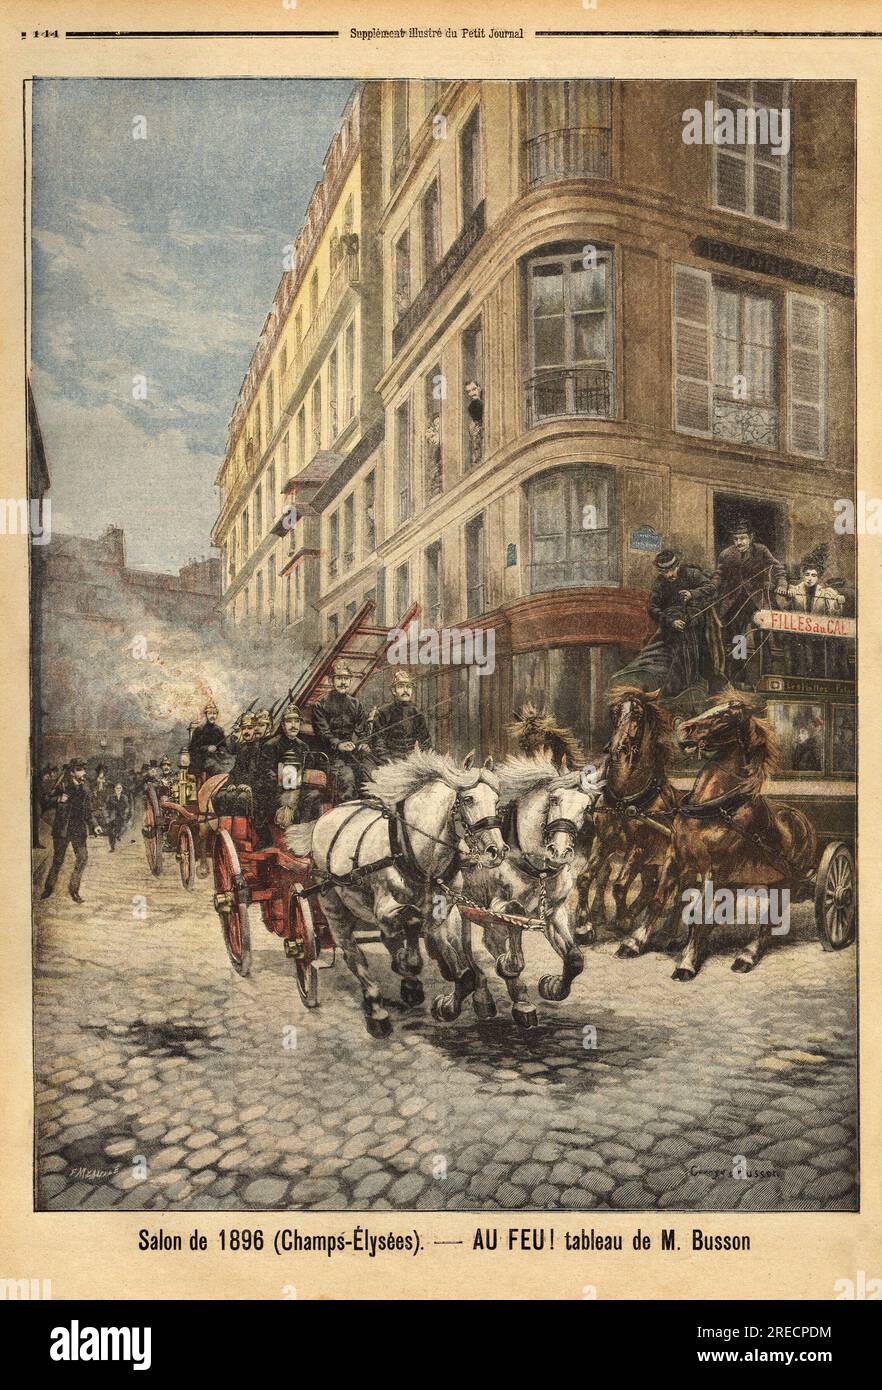 La pompe a vapeur et les vehicules des sapeurs pompiers de Paris, d'apres un tableau de M. Busson. Gravure in 'Le petit journal' 3051896. Stock Photo